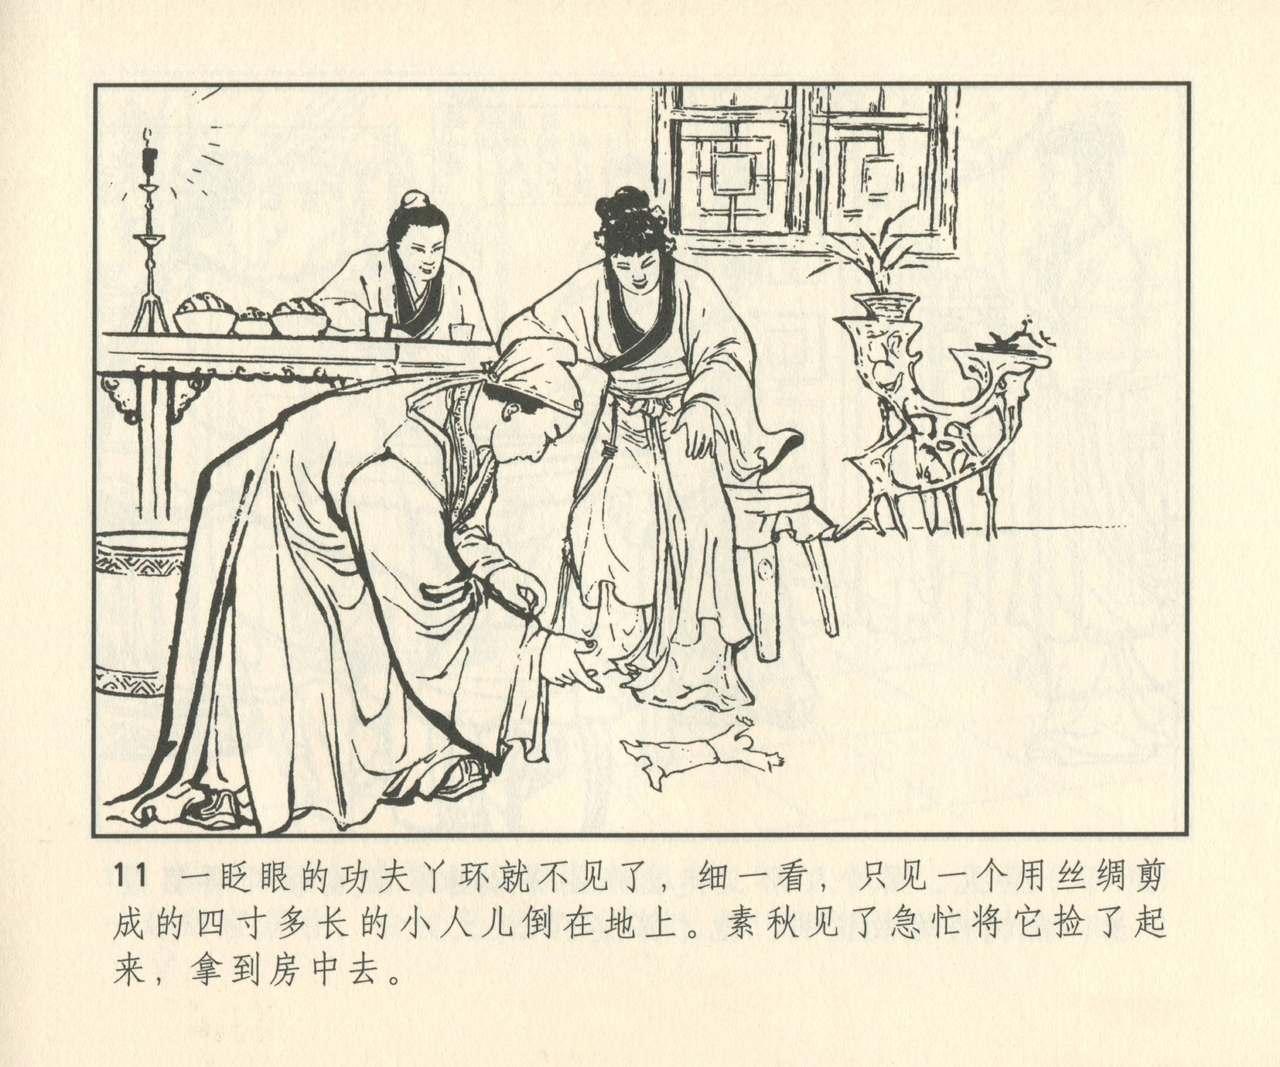 聊斋志异 张玮等绘 天津人民美术出版社 卷二十一 ~ 三十 291